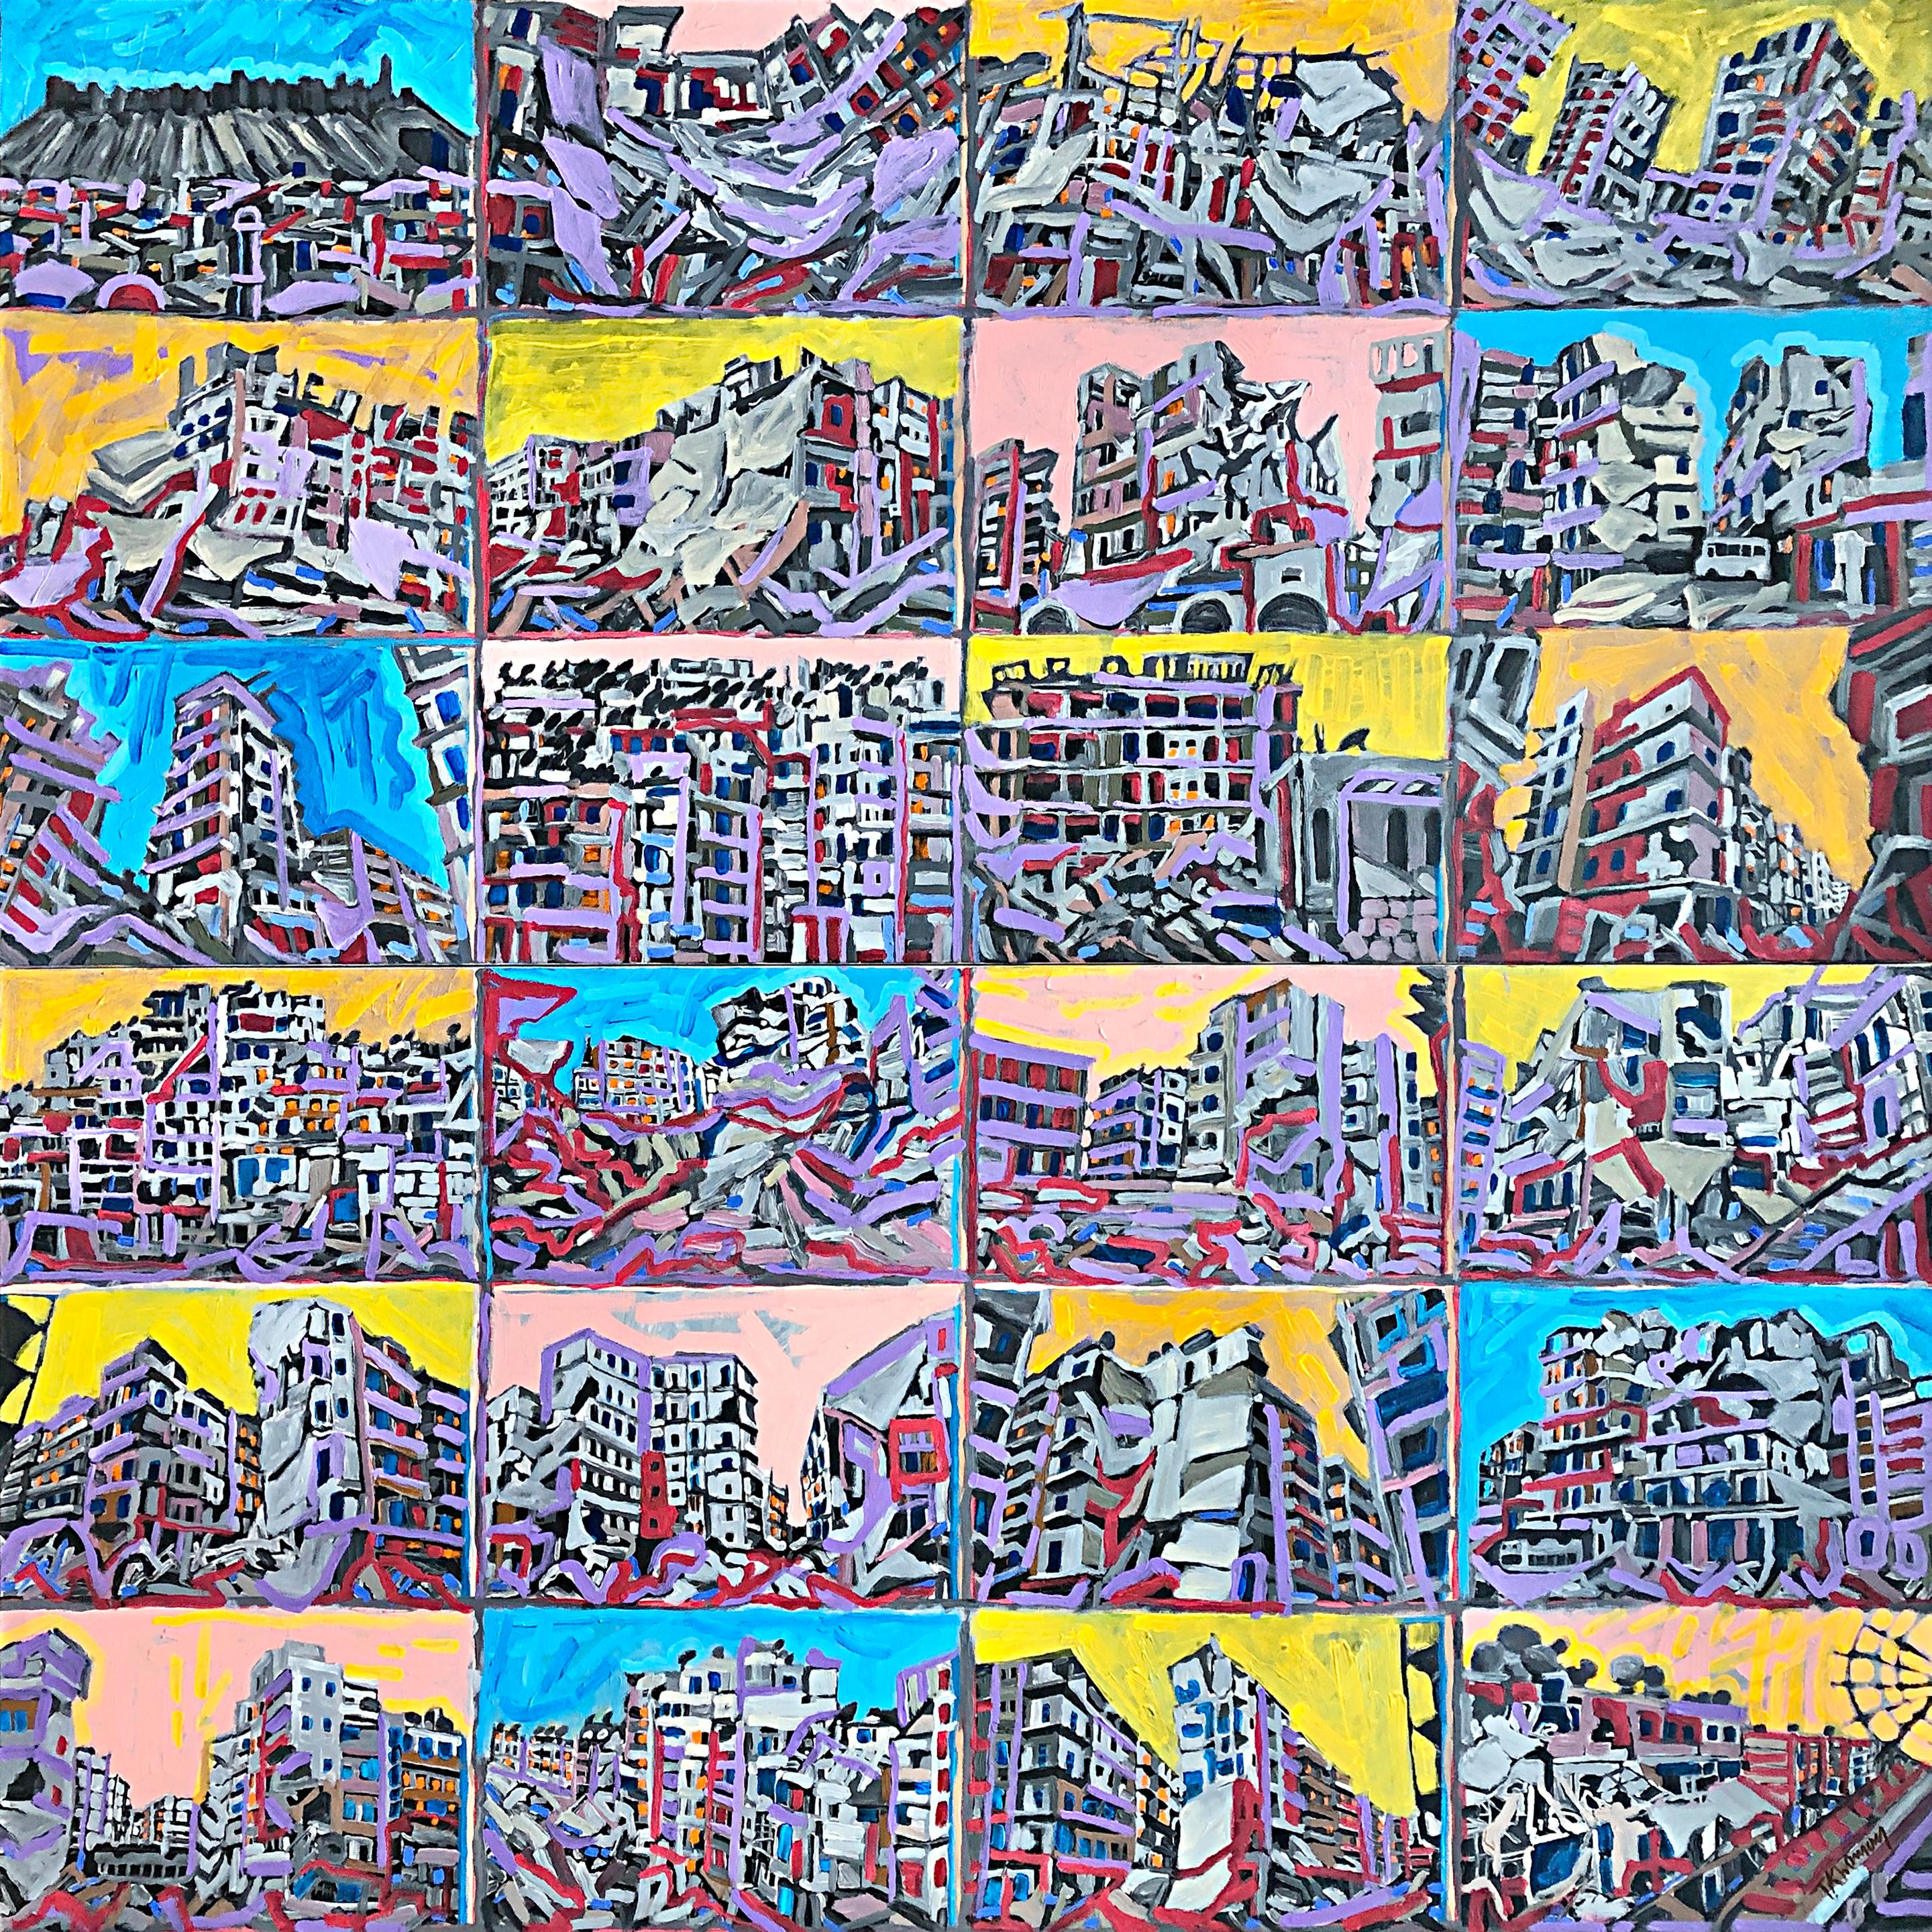 Aleppo to Kyiv Windows to the World - No.1 - Painting by Tony Khawam